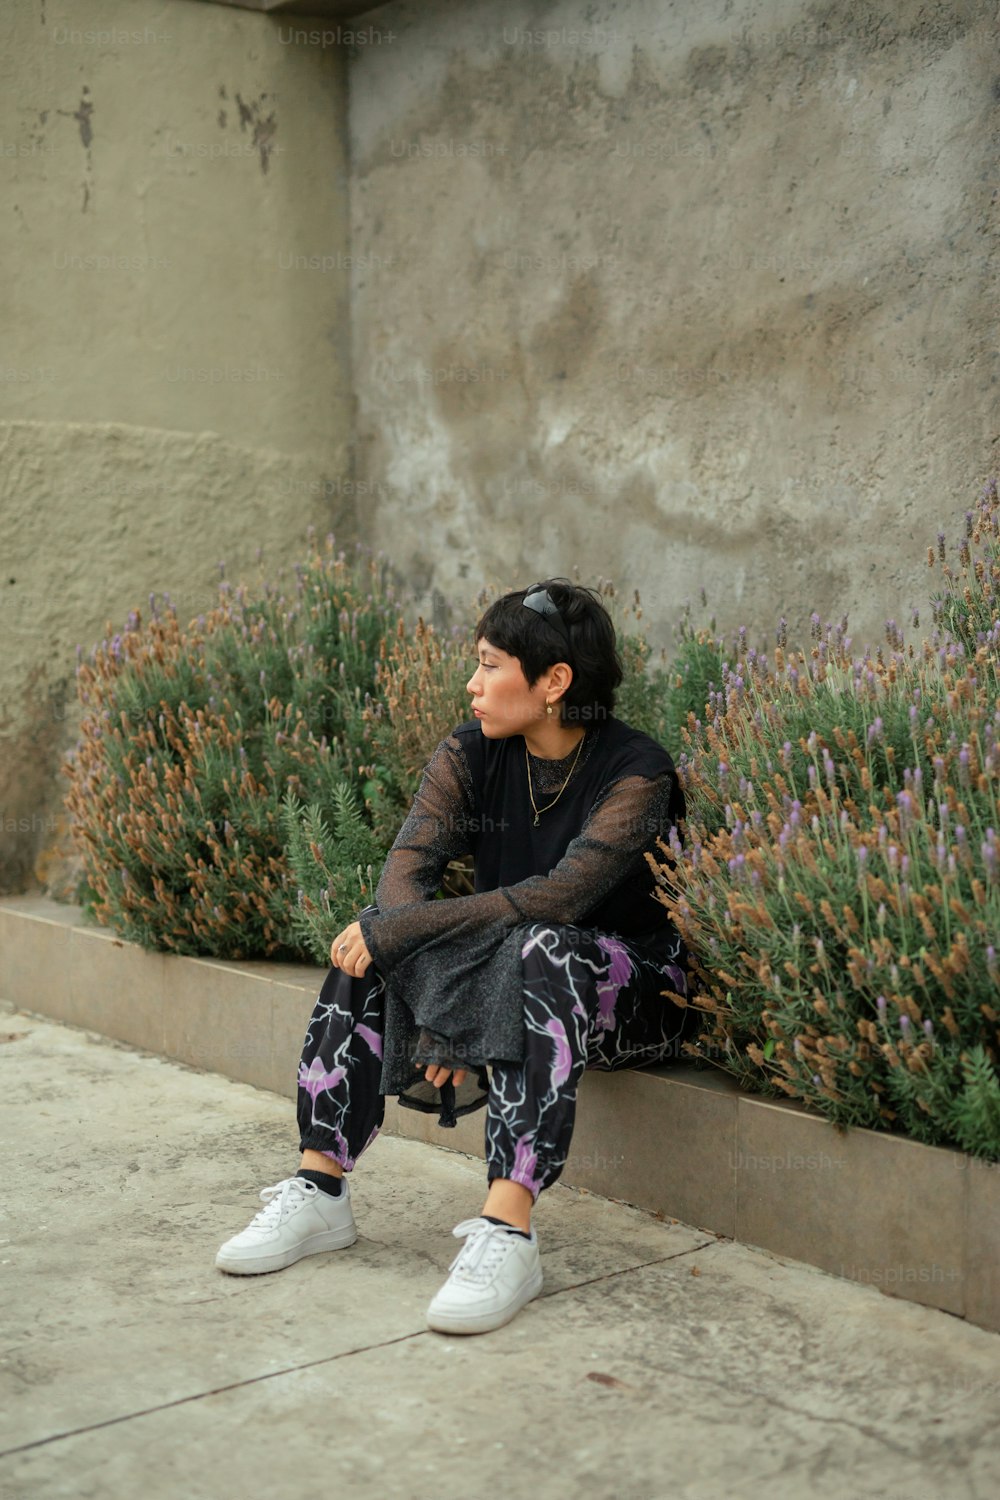 Una donna seduta su un marciapiede accanto a una pianta